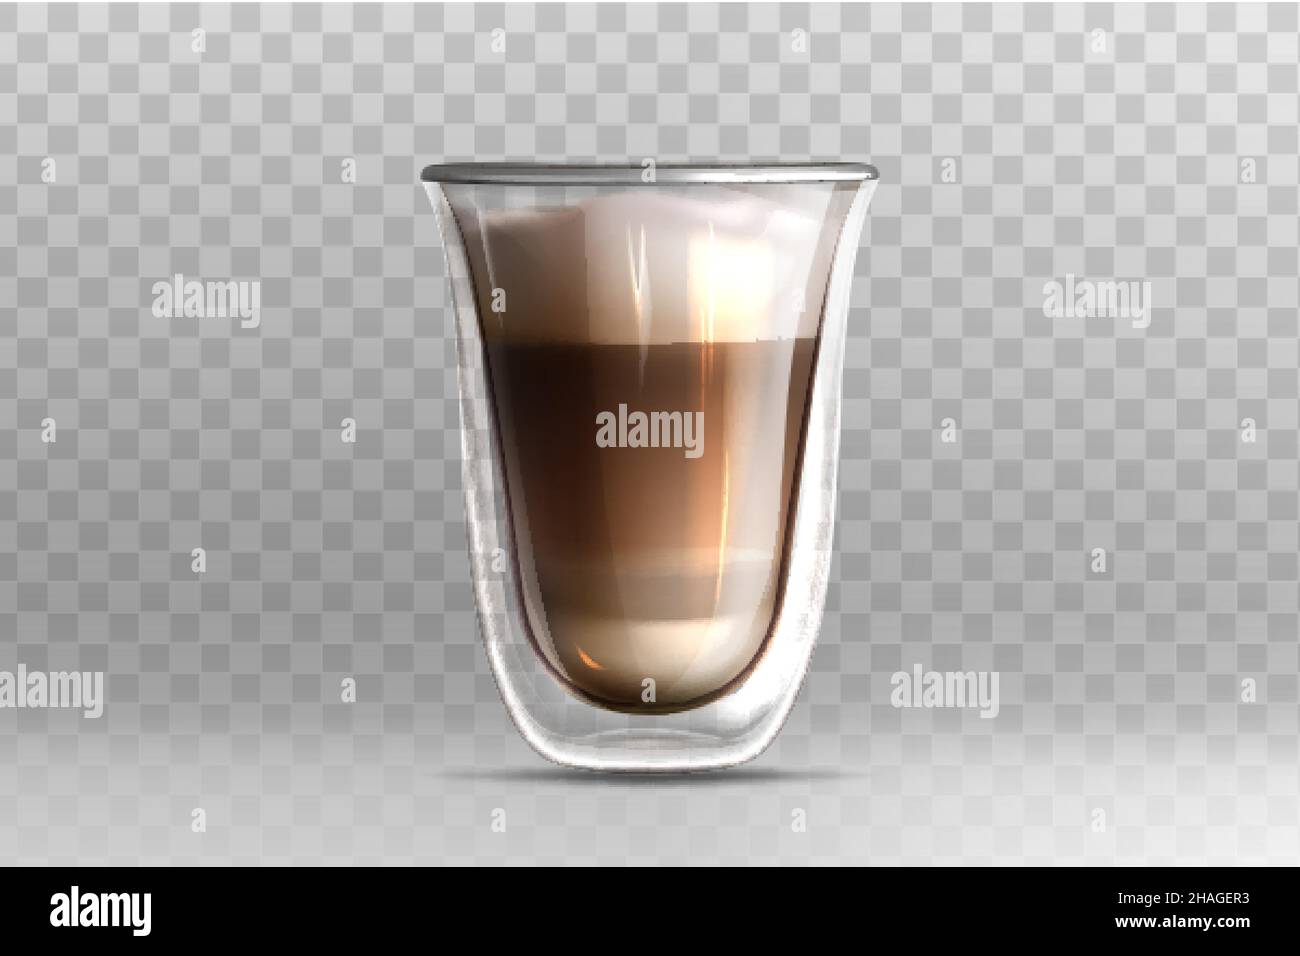 Illustratin vectoriel réaliste de latte de café dans une tasse en verre avec double paroi sur fond transparent.Cappuccino avec mousse de lait sur le dessus.Modèle de maquette pour la marque ou la conception de produit. Illustration de Vecteur